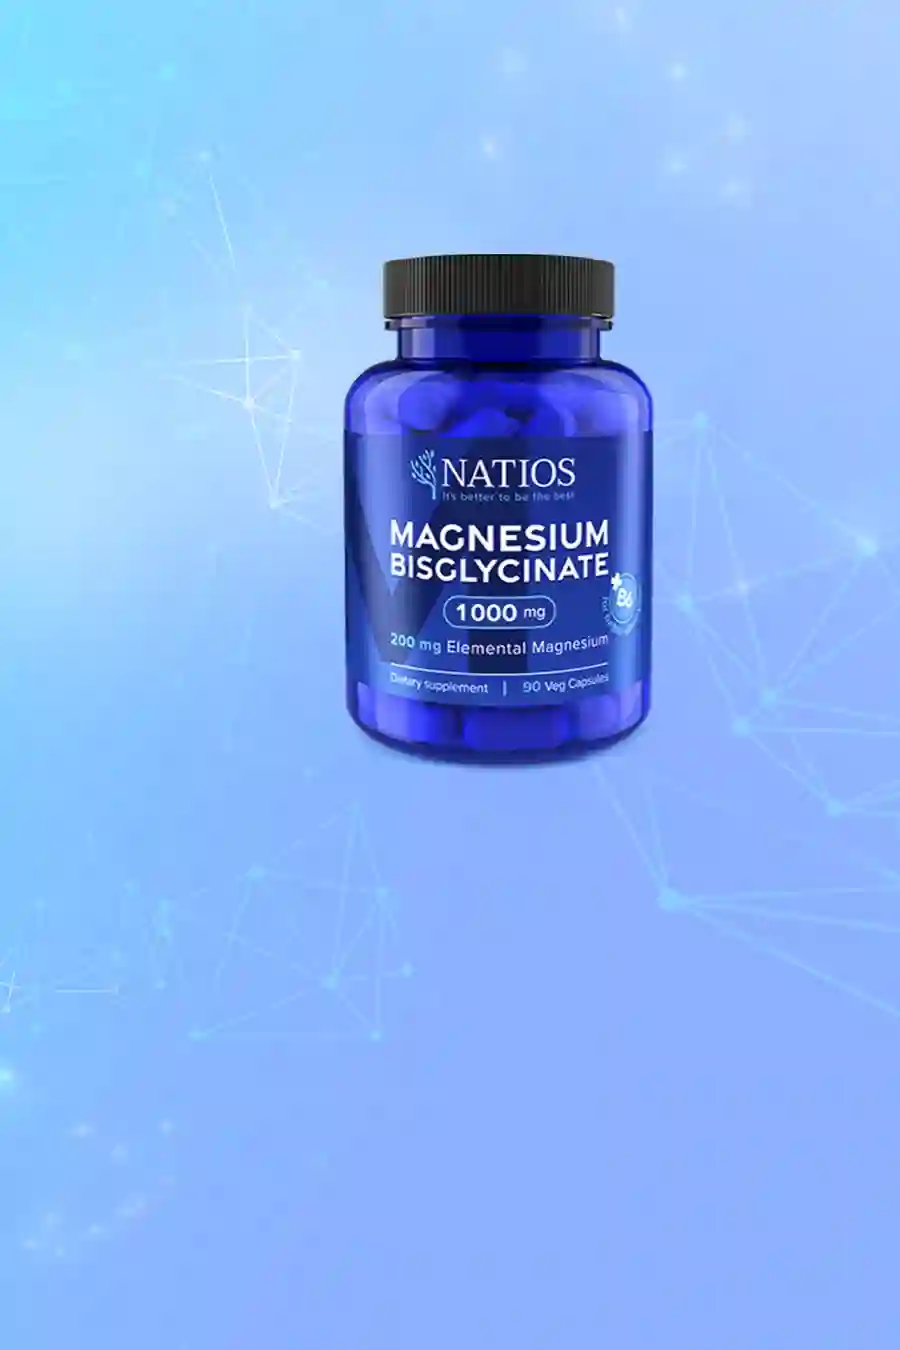 Natios Magnesium Biglycinate